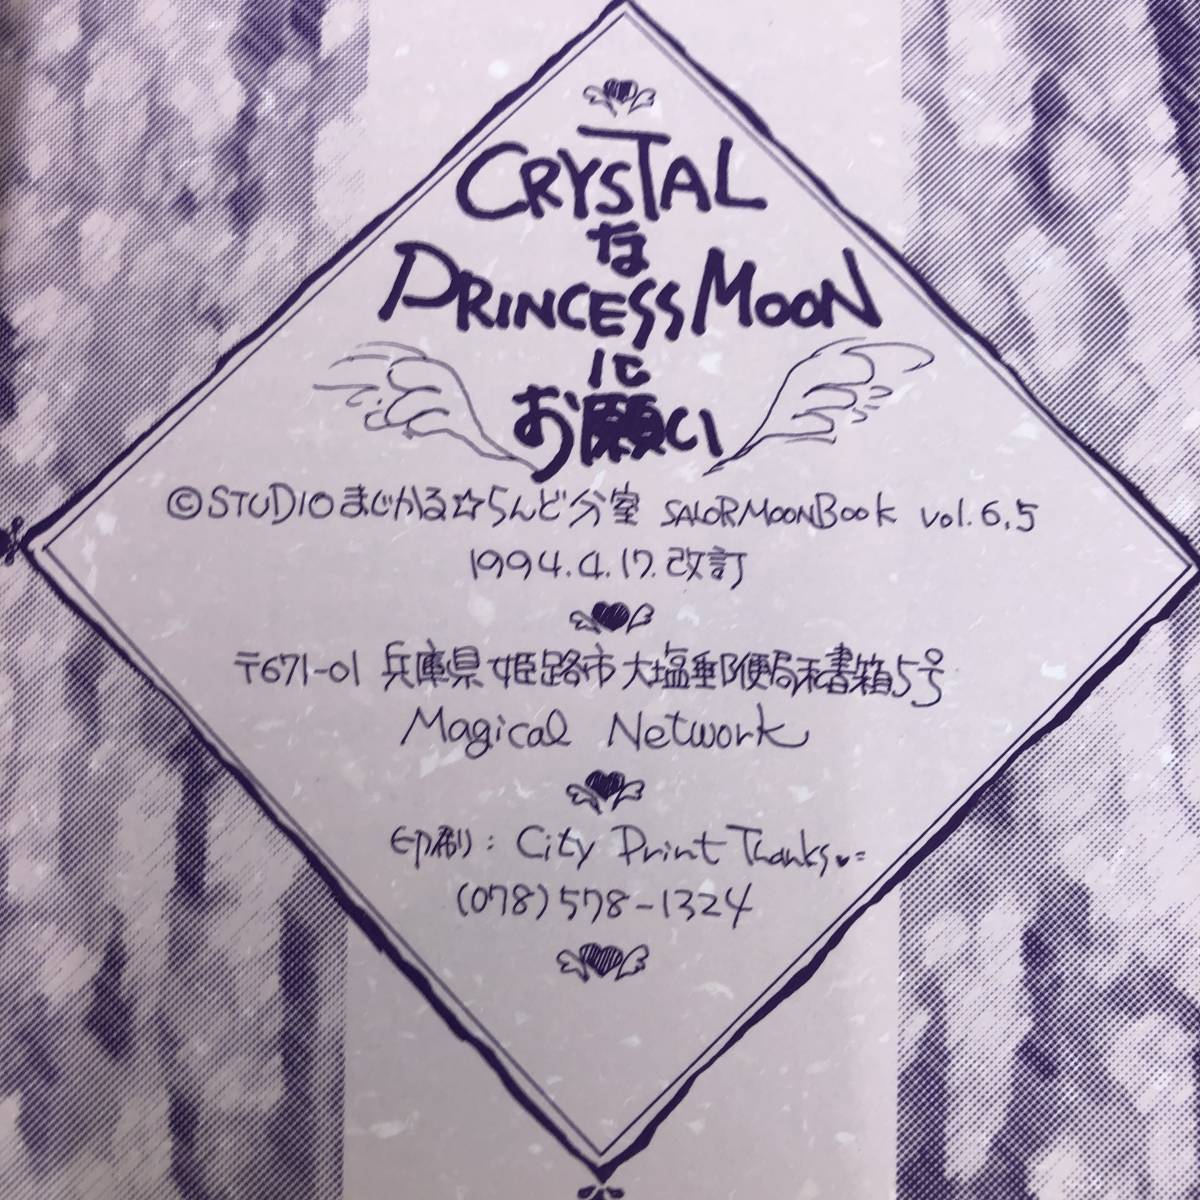 G-5251#CRYSTAL.PRINCESS MOON. пожалуйста # Sailor Moon журнал узкого круга литераторов #STUDIO....*... минут .#1994 год 4 месяц 17 день выпуск #